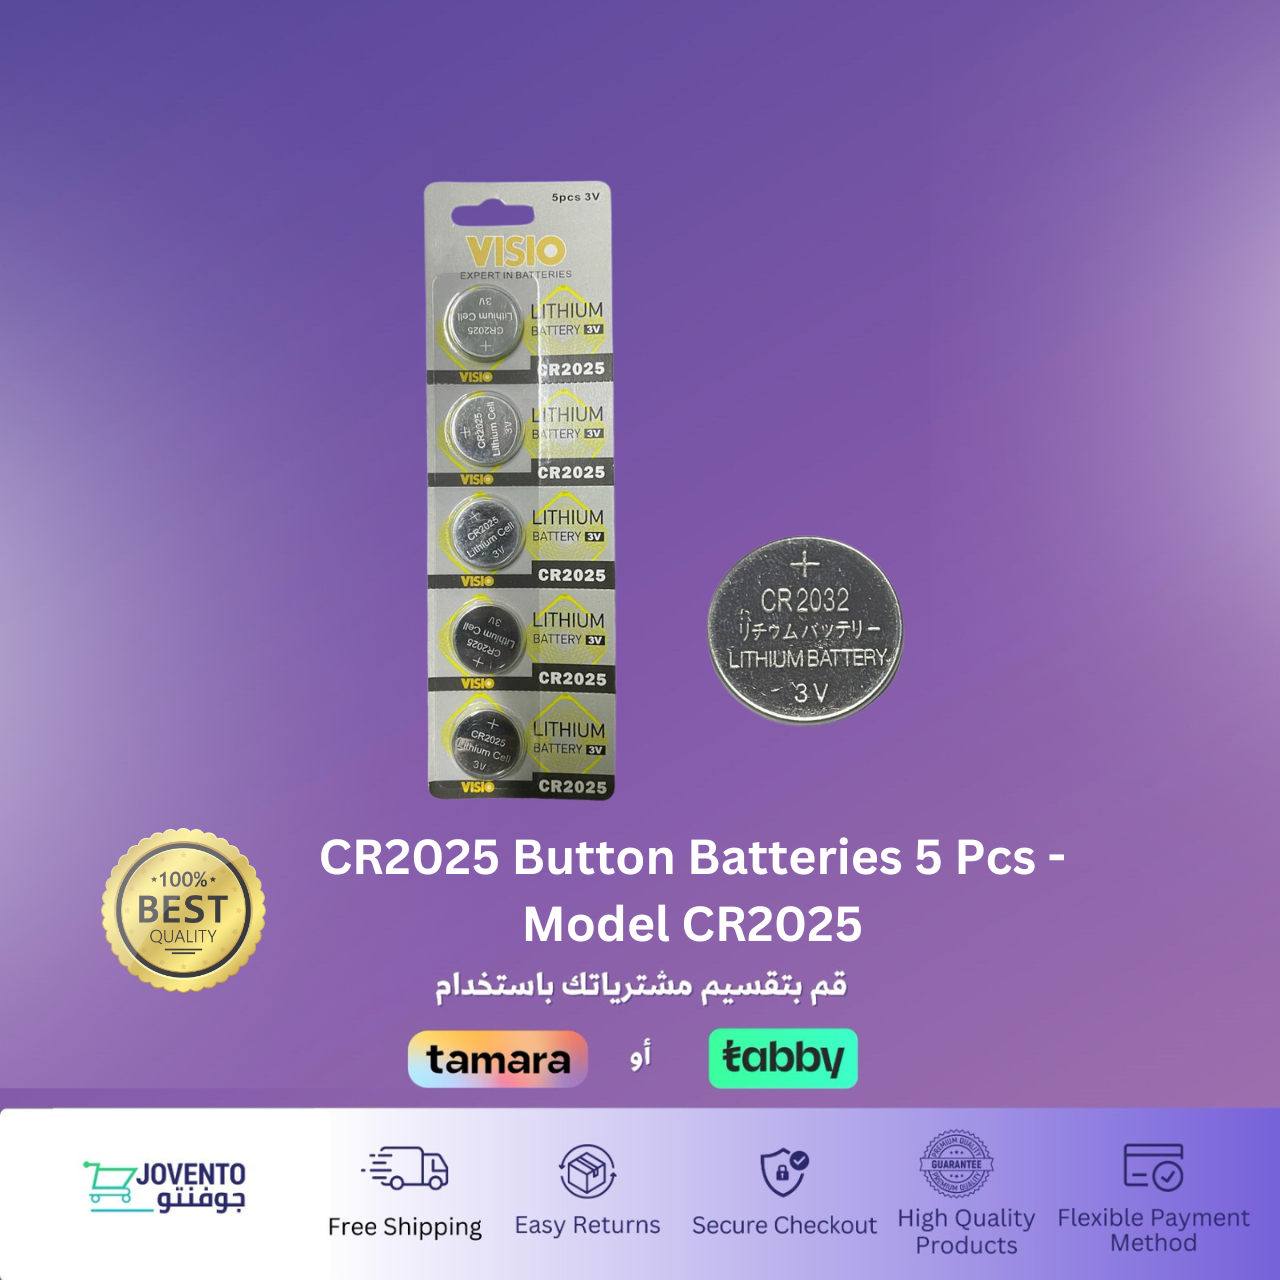 CR2025 Button Batteries 5 Pcs - Model CR2025